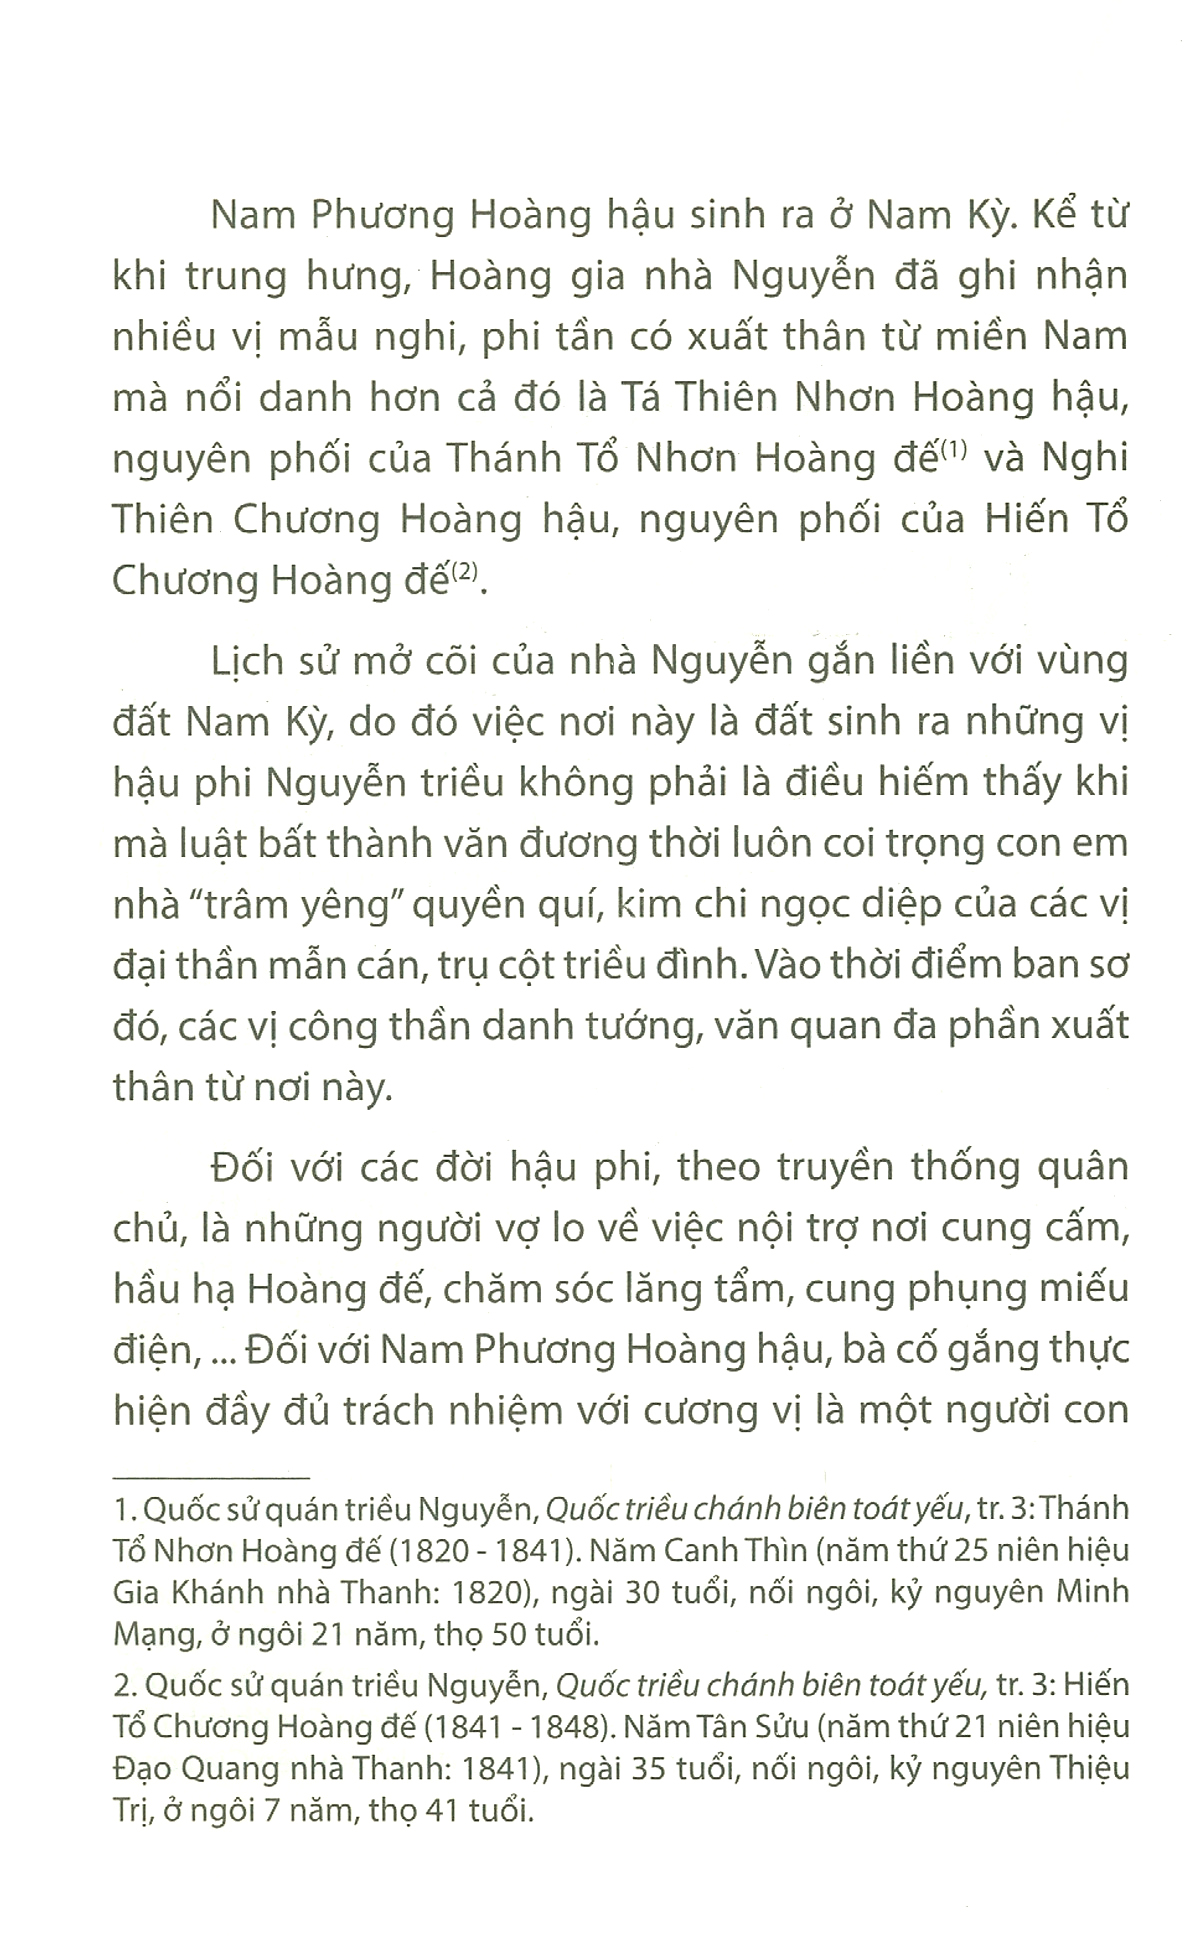 Nam Phương Hoàng Hậu - Vị Quốc Mẫu Tân Thời Qua Tư Liệu Báo Chí 1934-1945 PDF